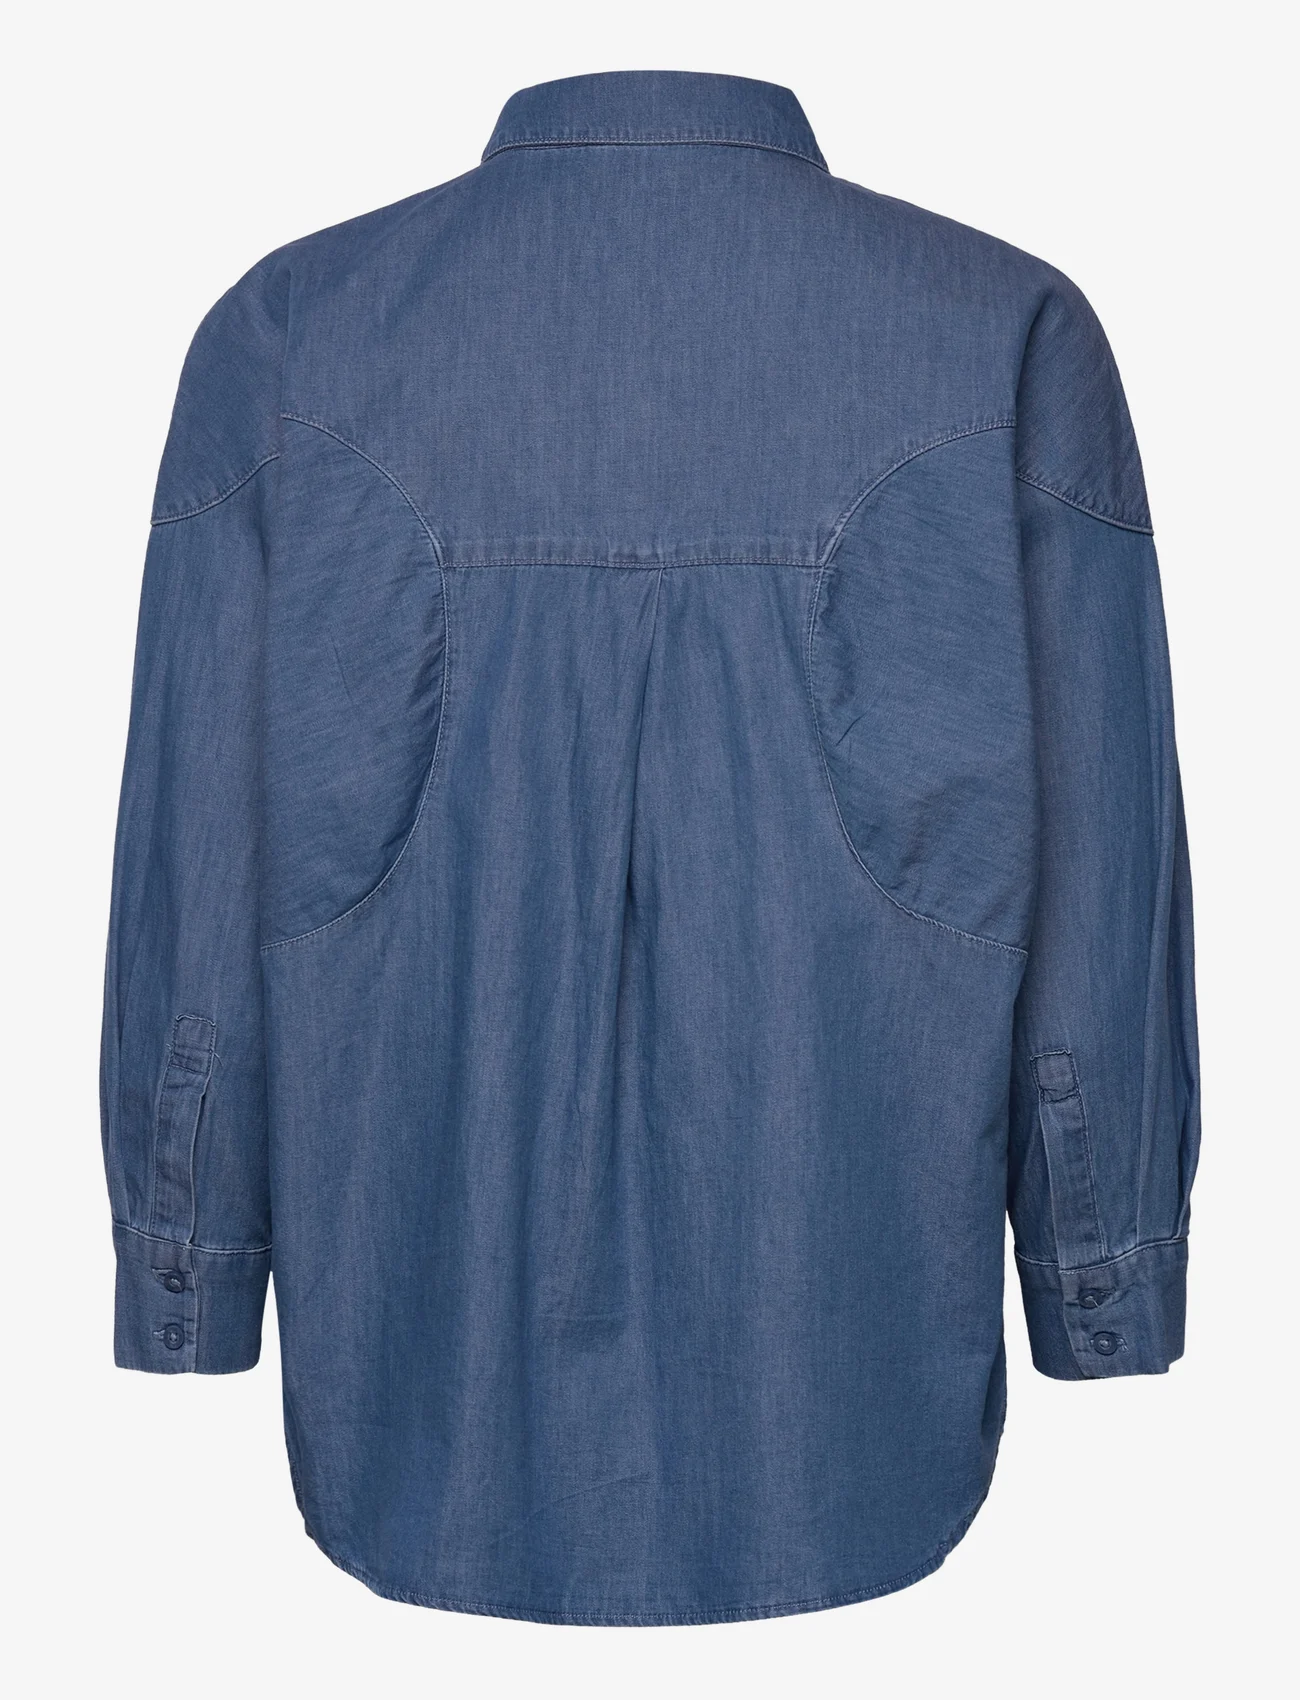 Esprit Collection - Cotton denim blouse - denimskjorter - blue medium wash - 1